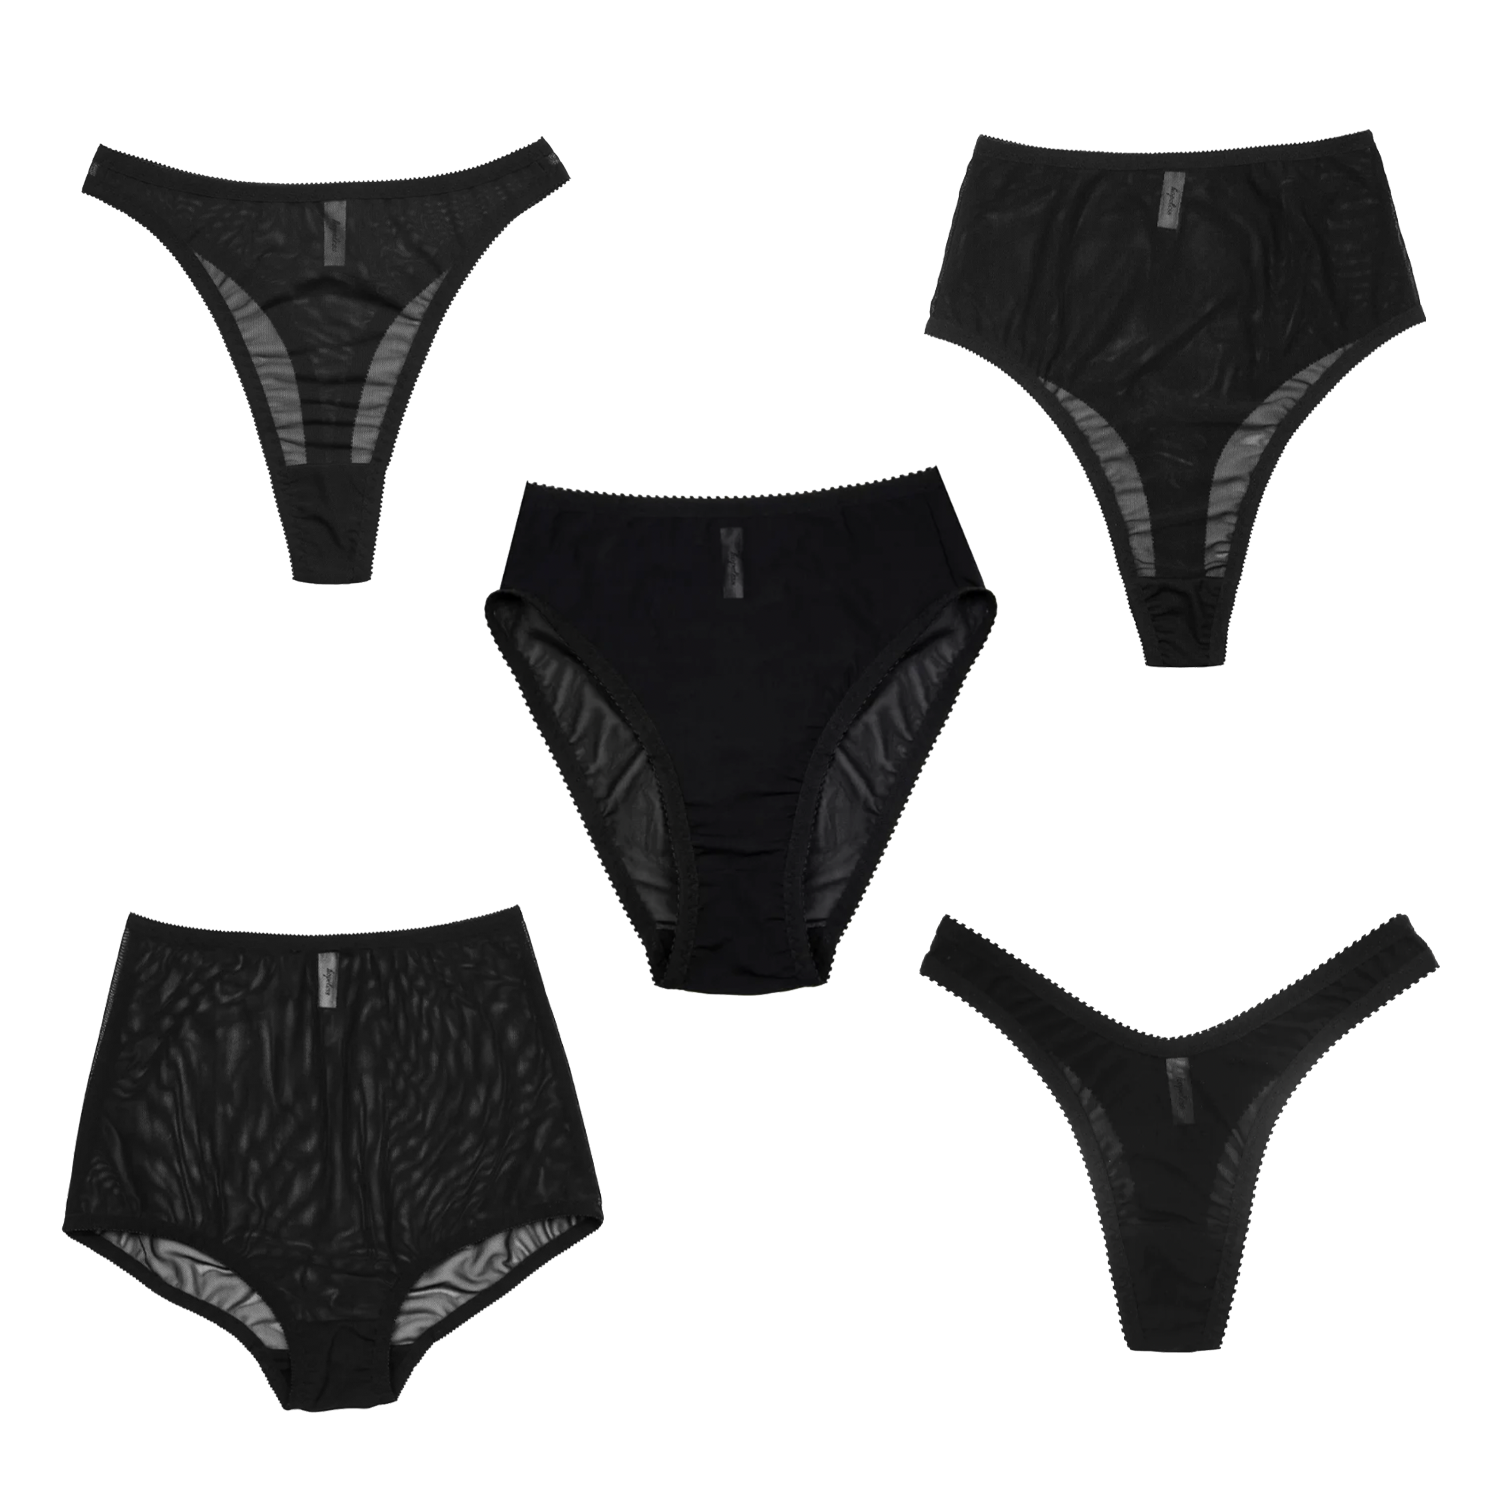 Black Underwear 5 Pack  Ethical Lingerie Made in Australia by Hopeless –  Hopeless Lingerie